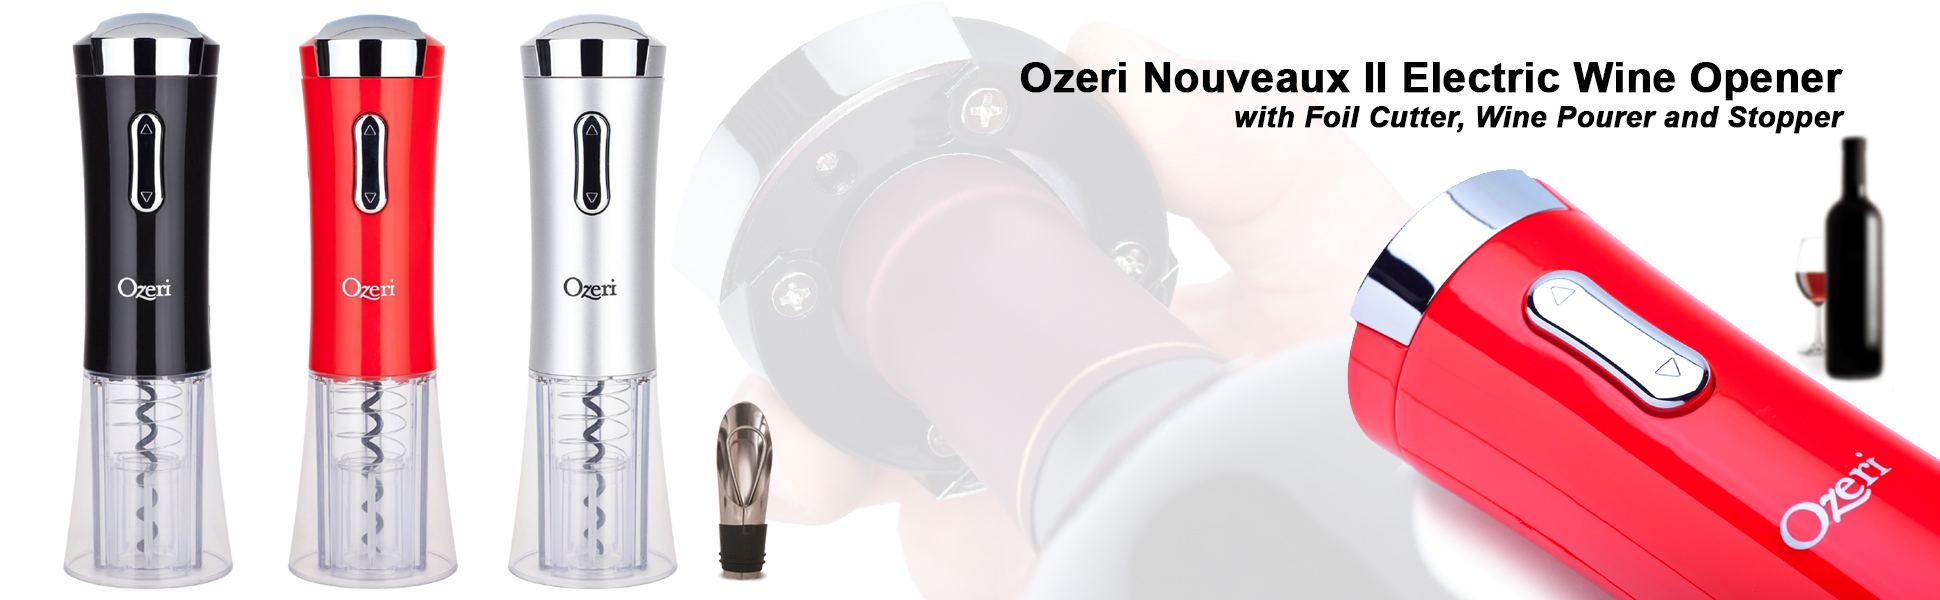 Ozeri.com : Ozeri Nouveaux II Electric Wine Opener with Foil 